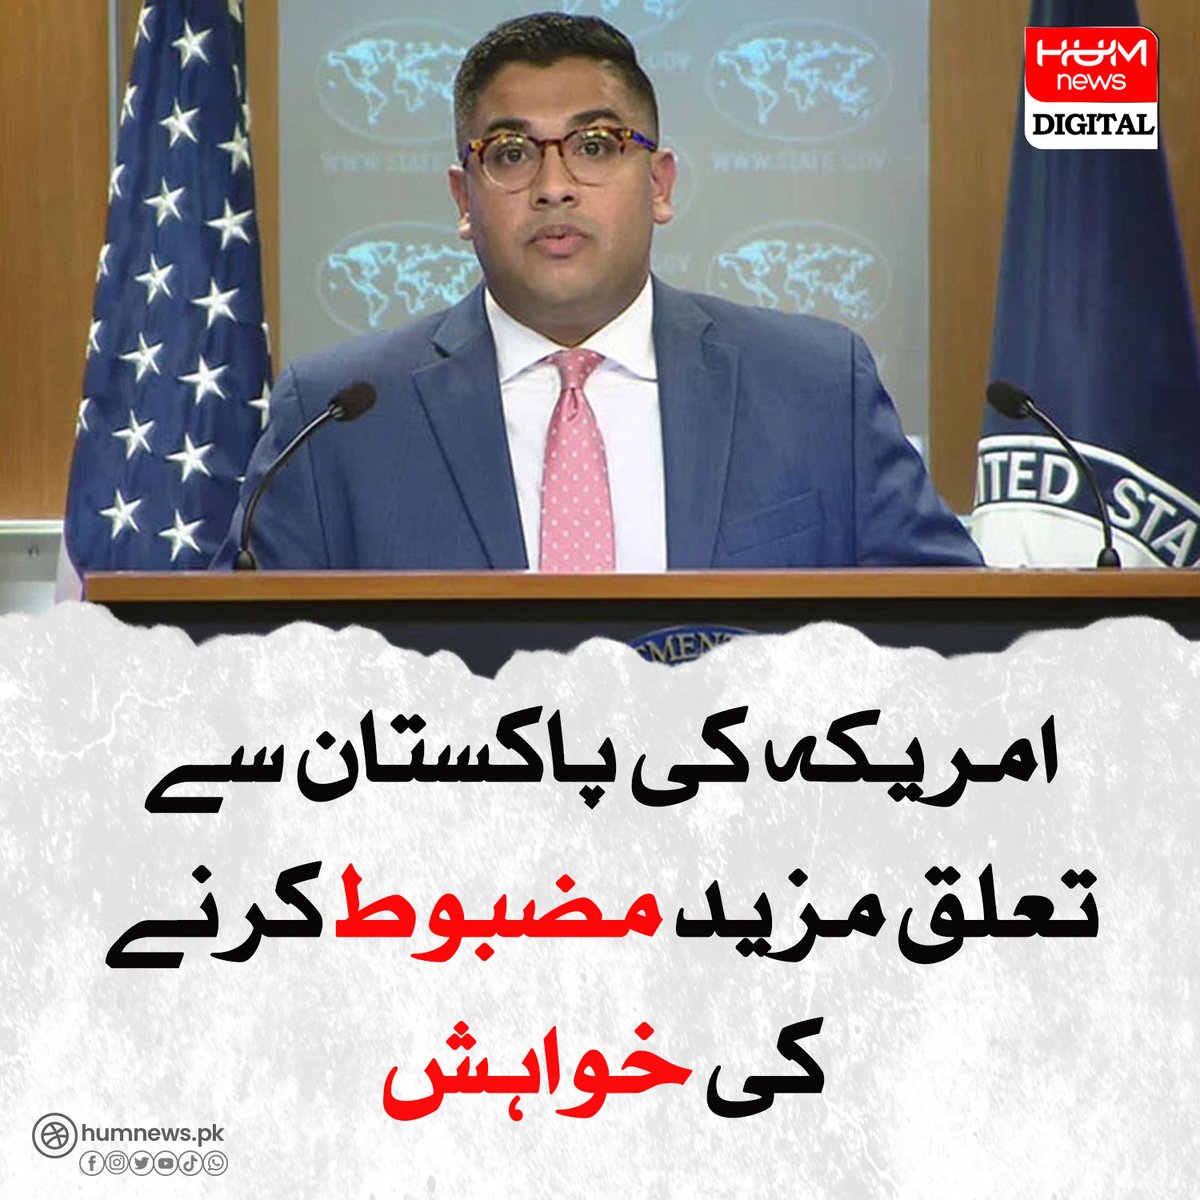 امریکہ کی پاکستان سے تعلق مزید مضبوط کرنے کی خواہش
humnews.pk/latest/480168/